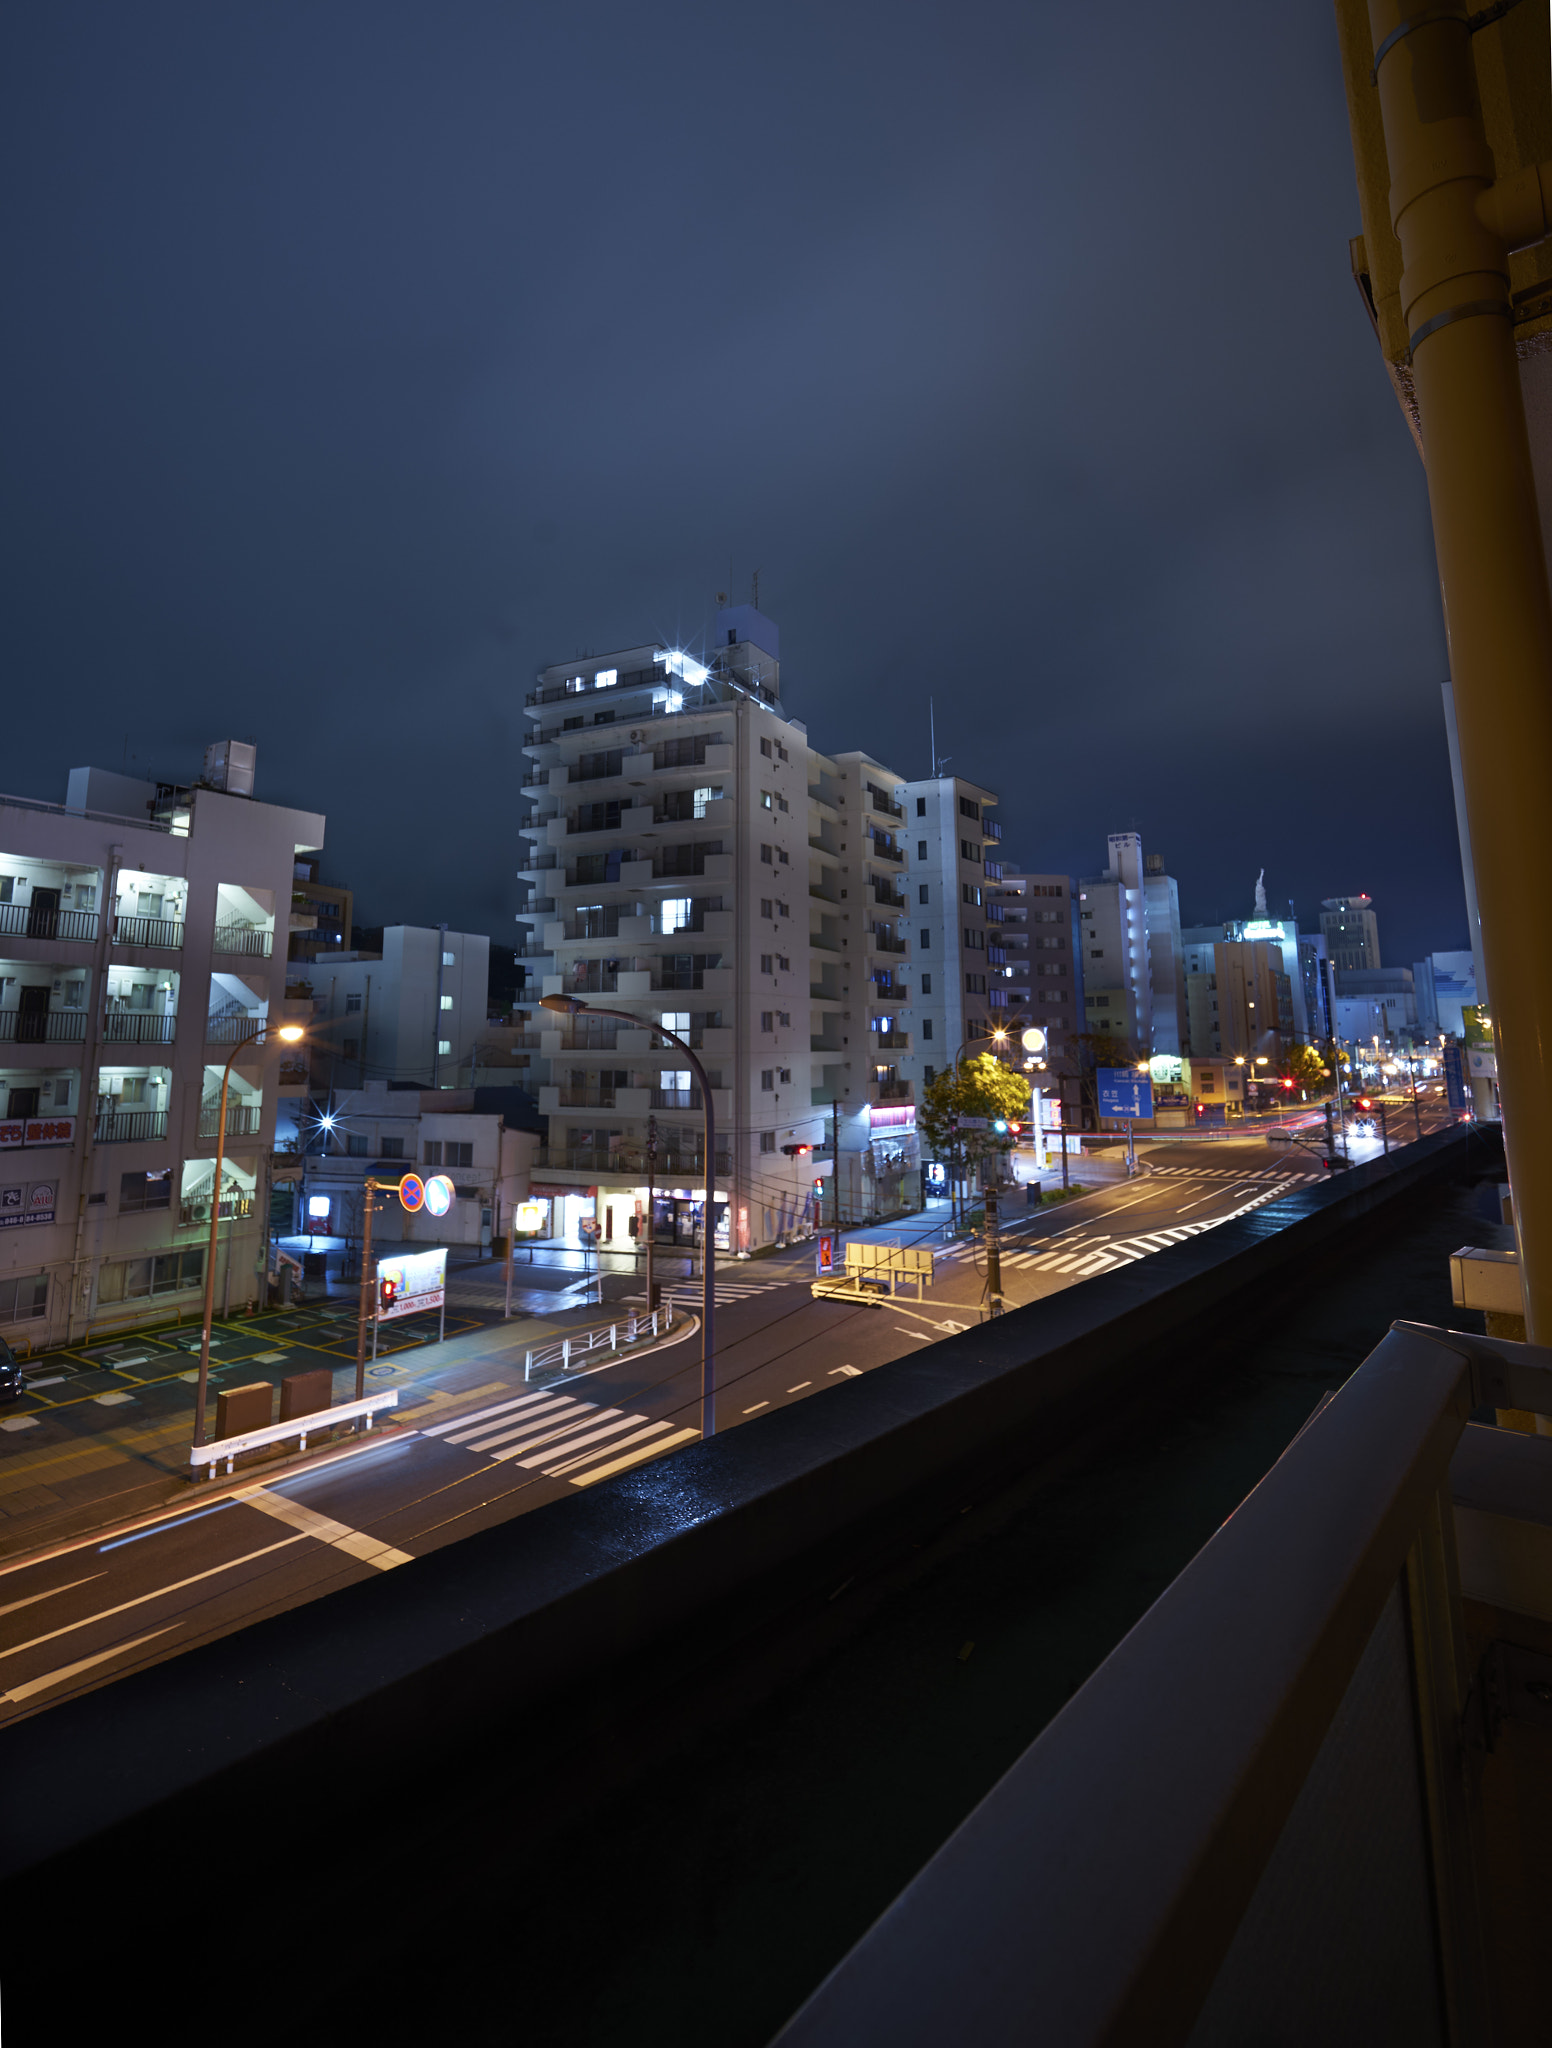 Sony a7 II sample photo. Yokosuka at night photography